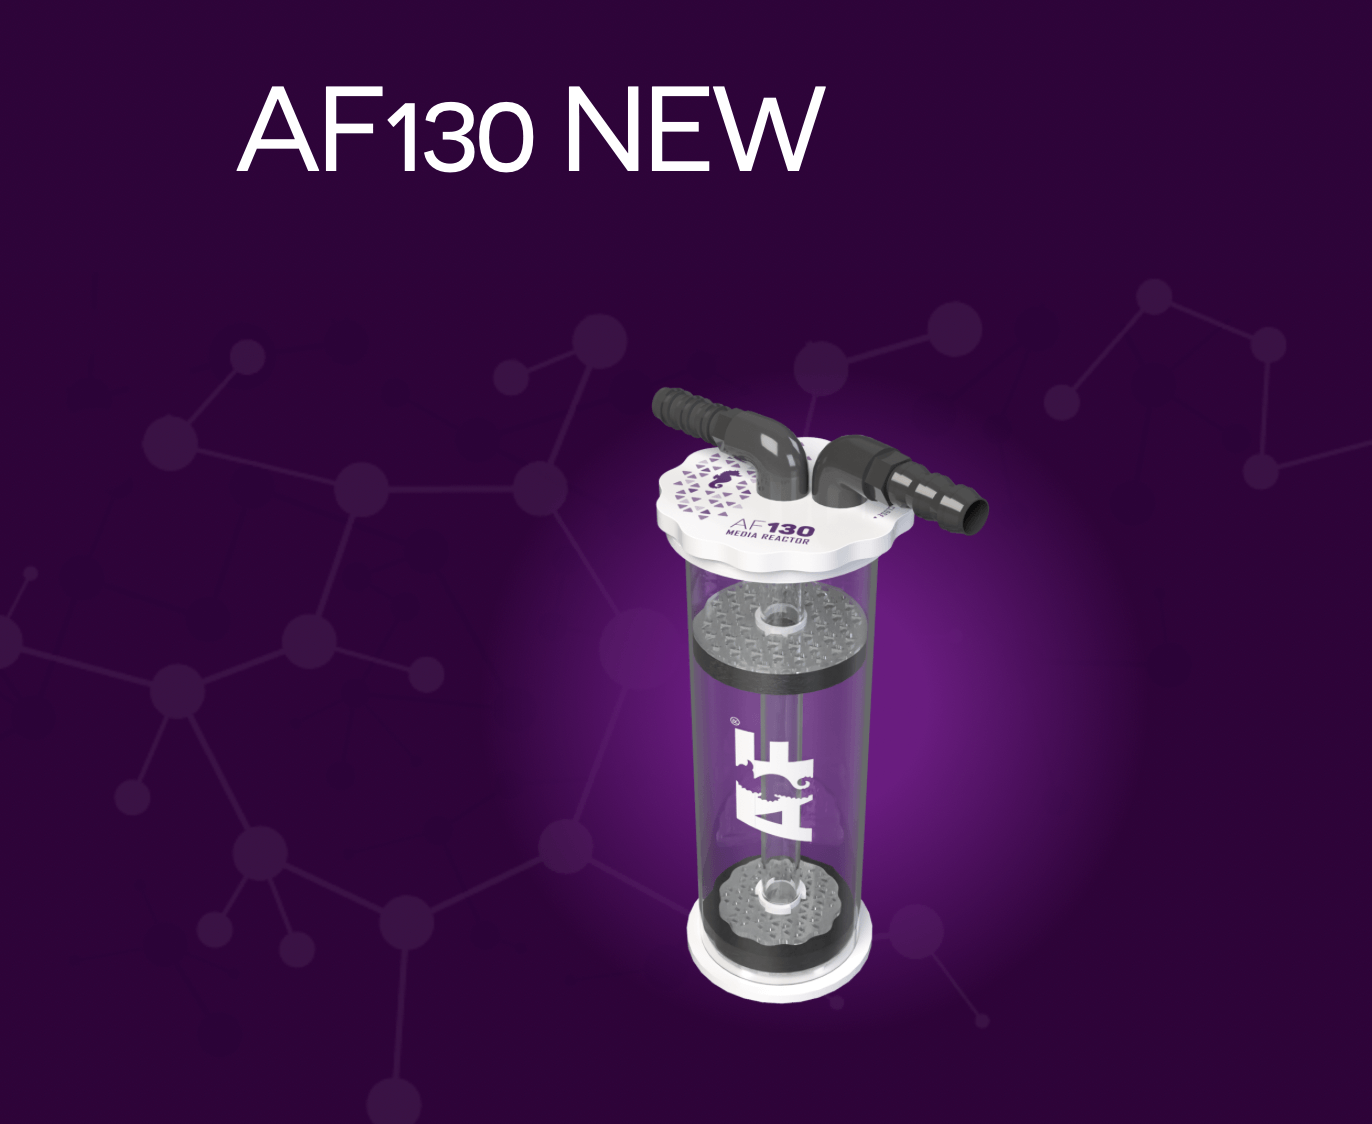 Aquaforest AF New 130 Media Reactor